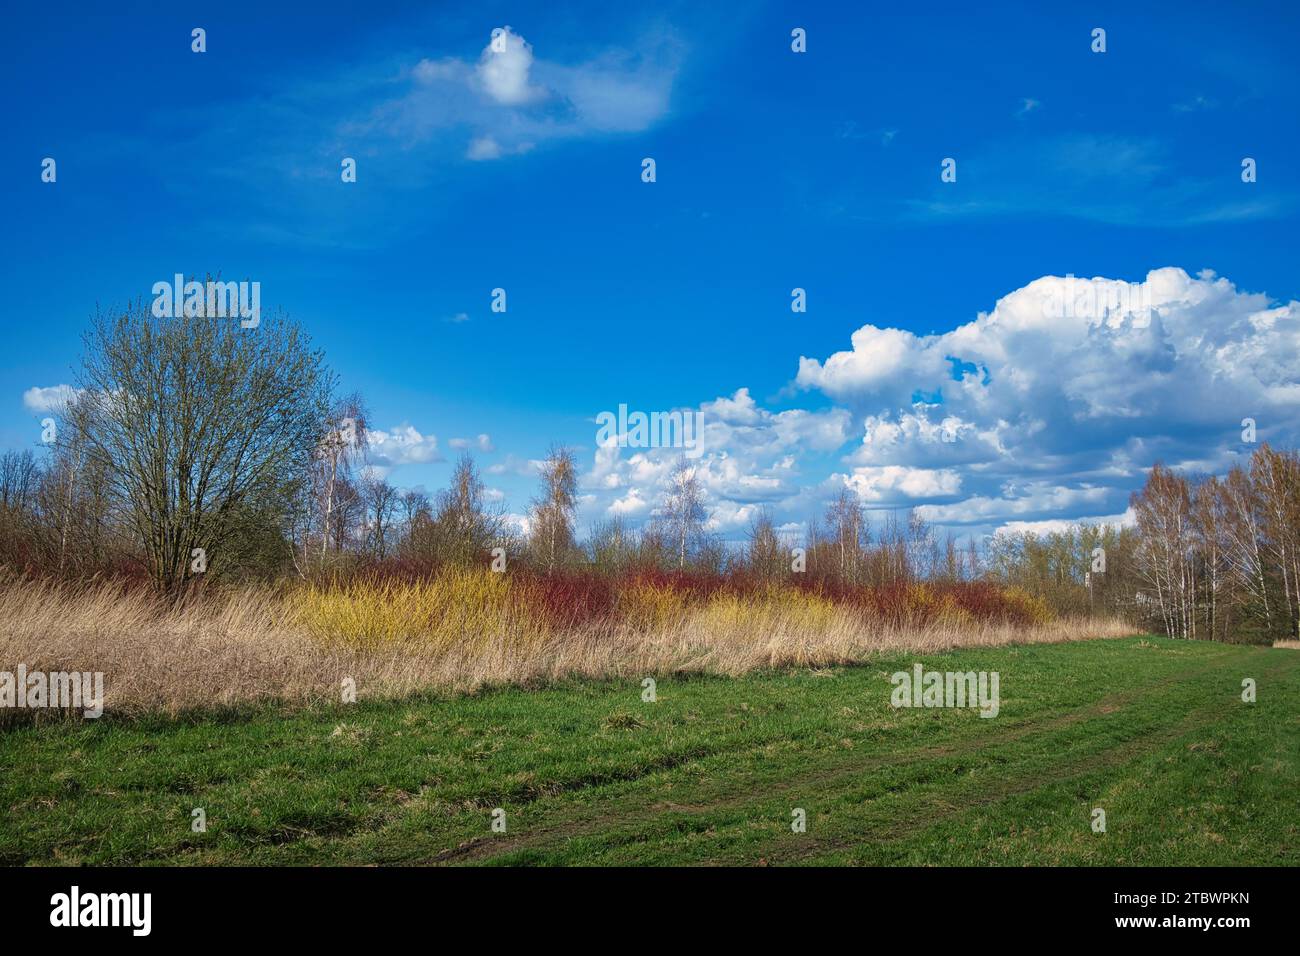 Üppiges grünes Grasfeld umgeben von Waldbäumen und bunten Sträuchern unter einem wolkigen blauen Himmel in einer landschaftlich reizvollen saisonalen Landschaft Stockfoto